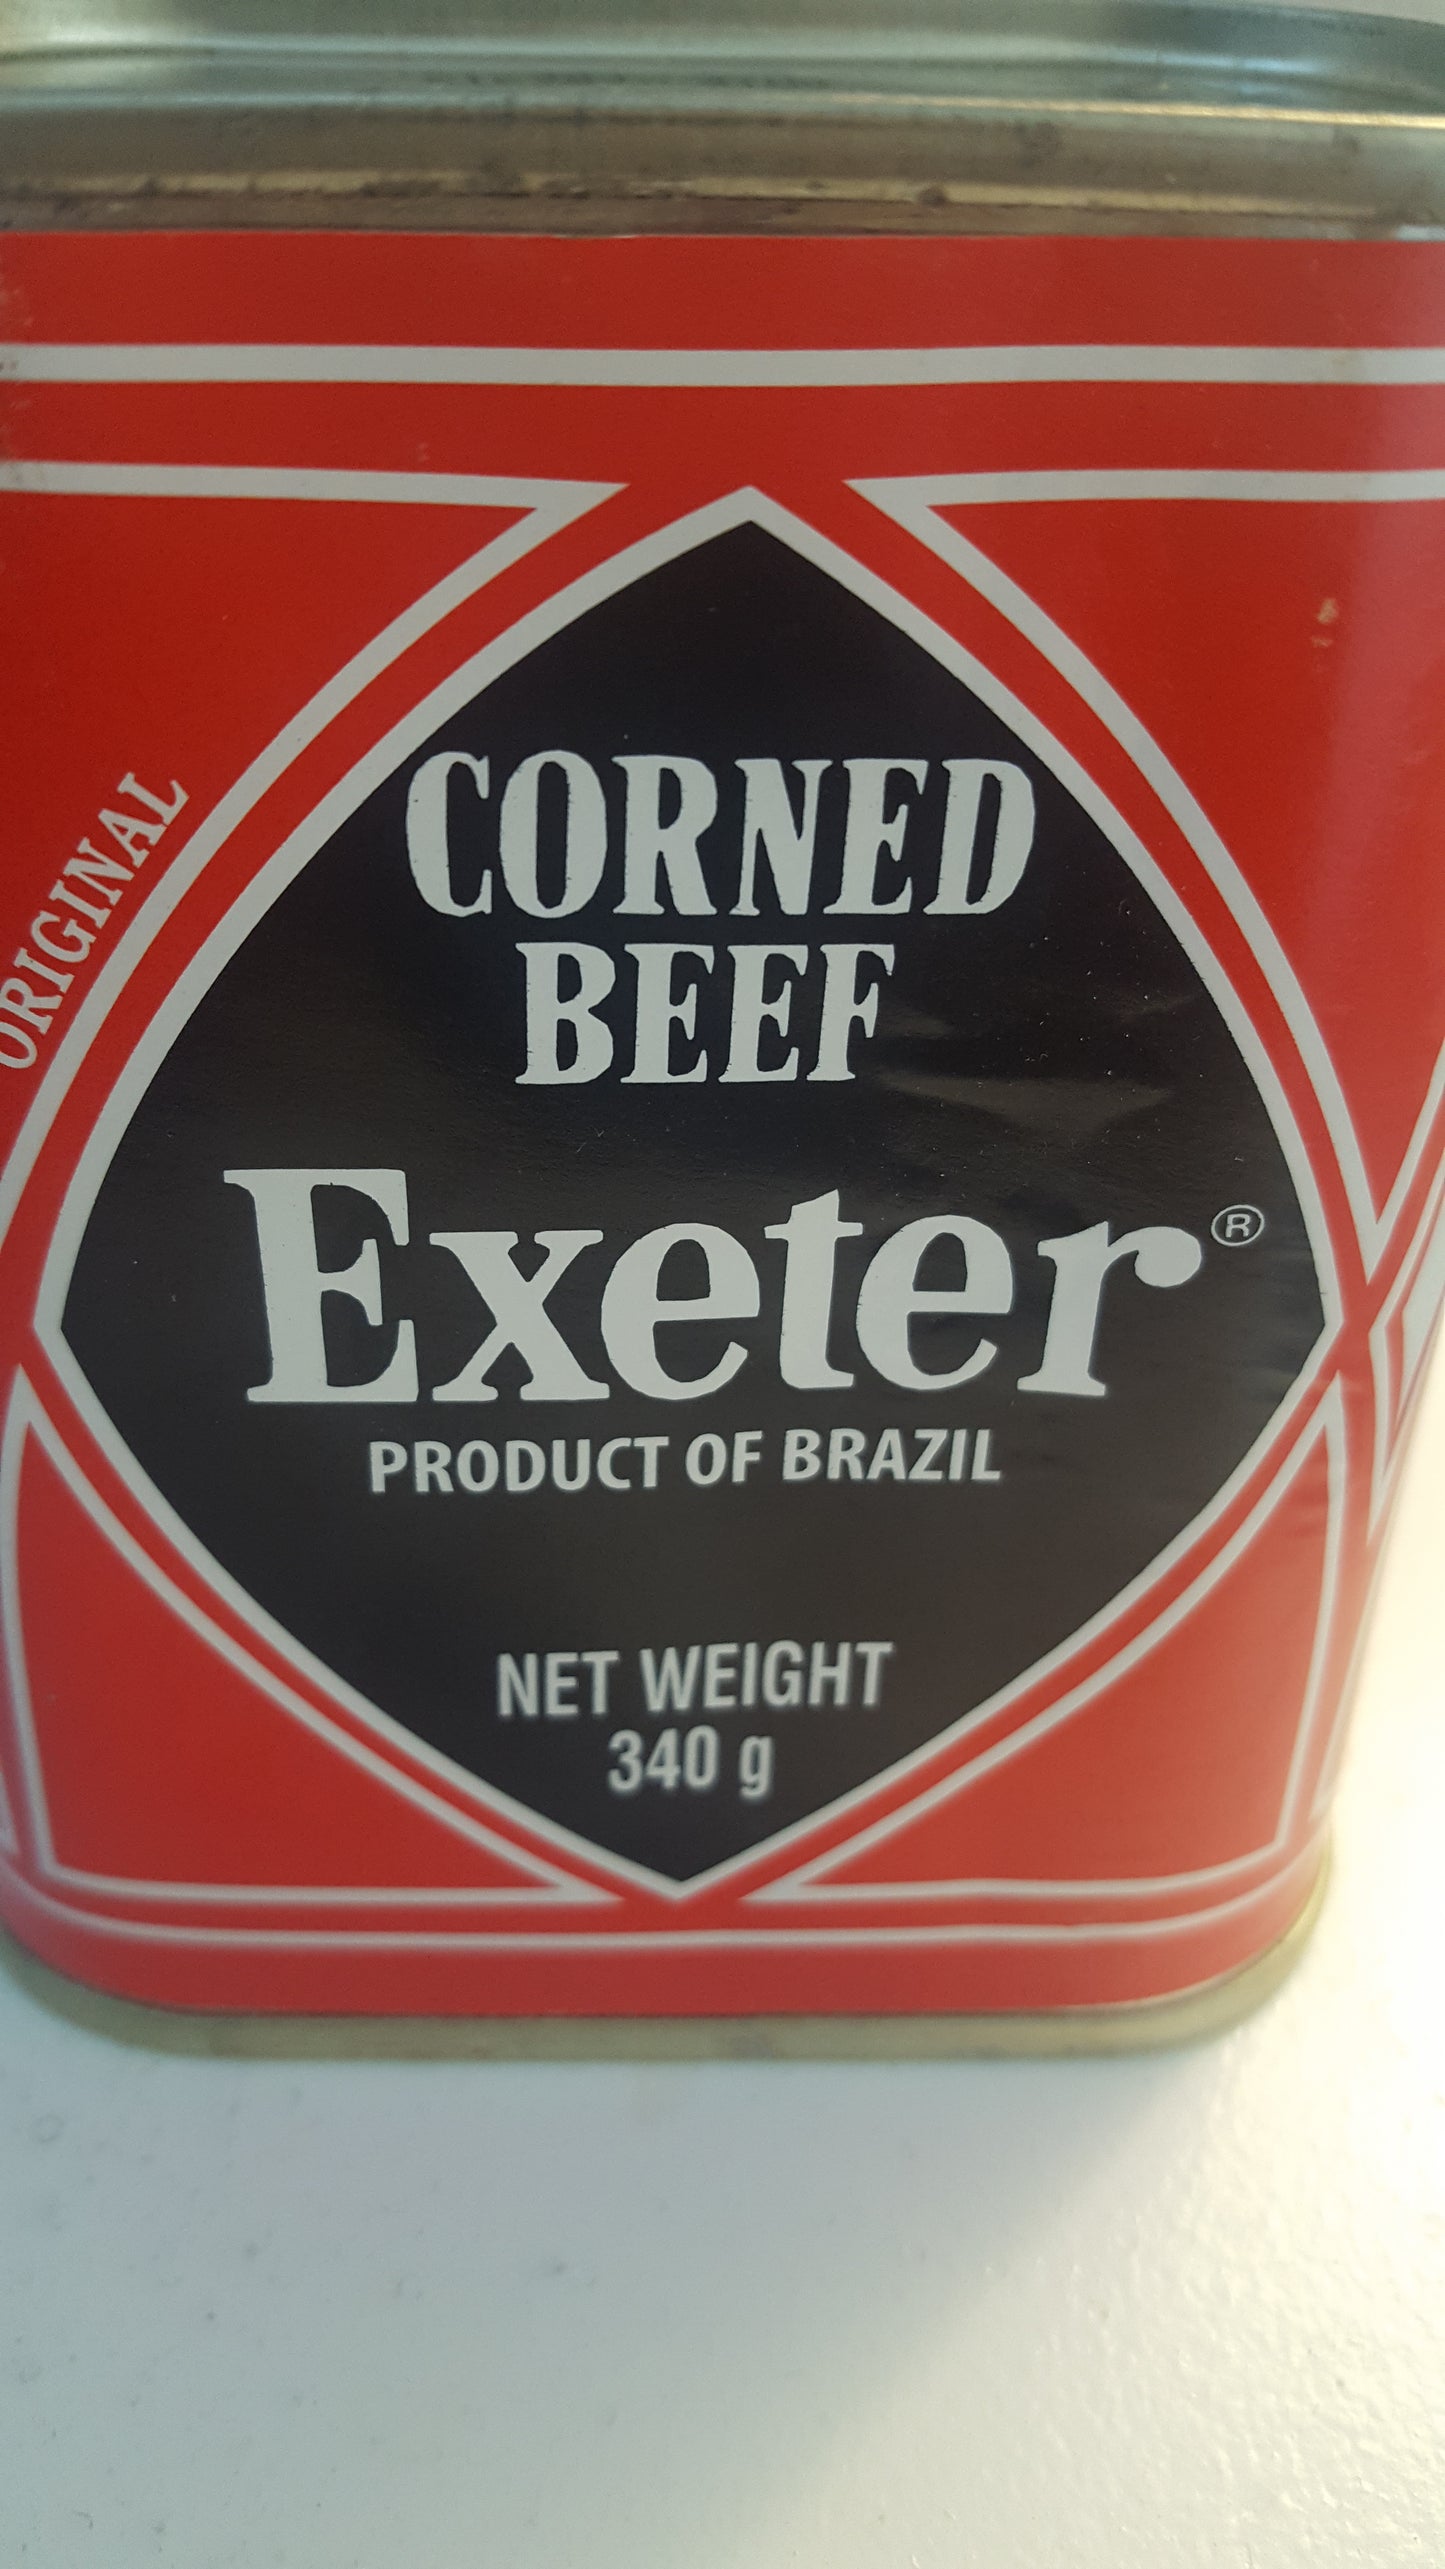 Exeter Corn beef